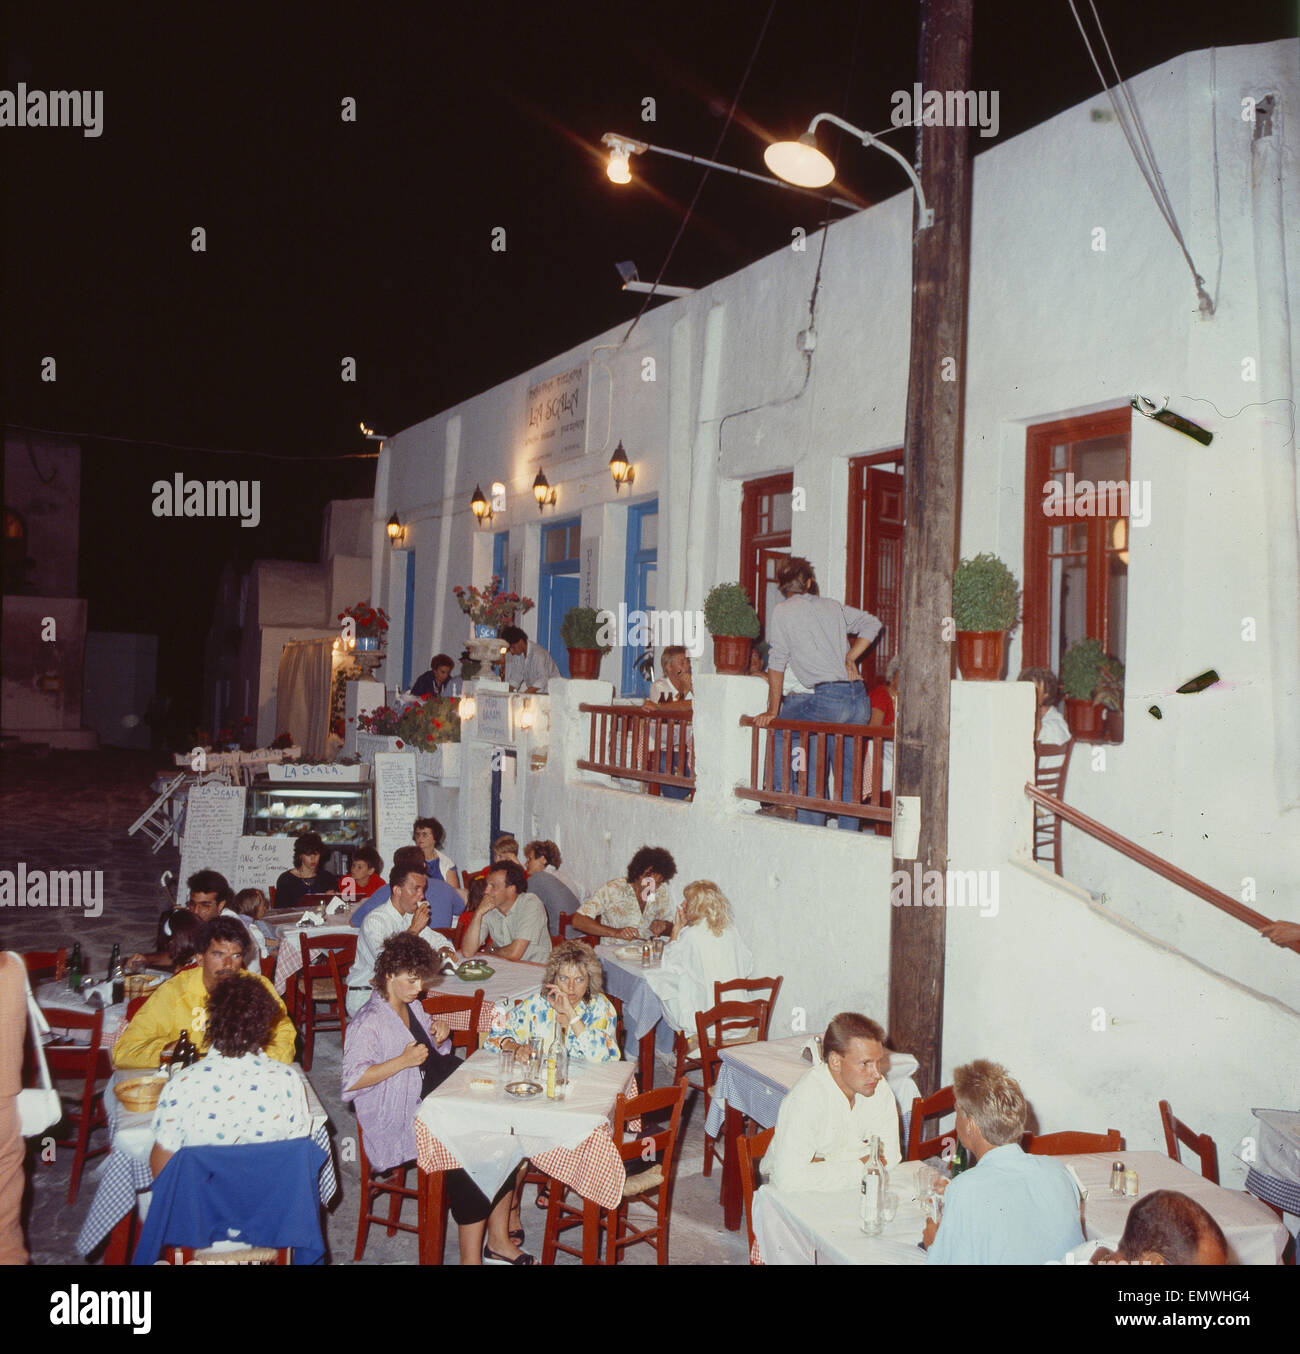 Griechenland/ Kykladen, Mykonos, Stadt Mykonos, Restaurant, Nachtaufnahme Stock Photo